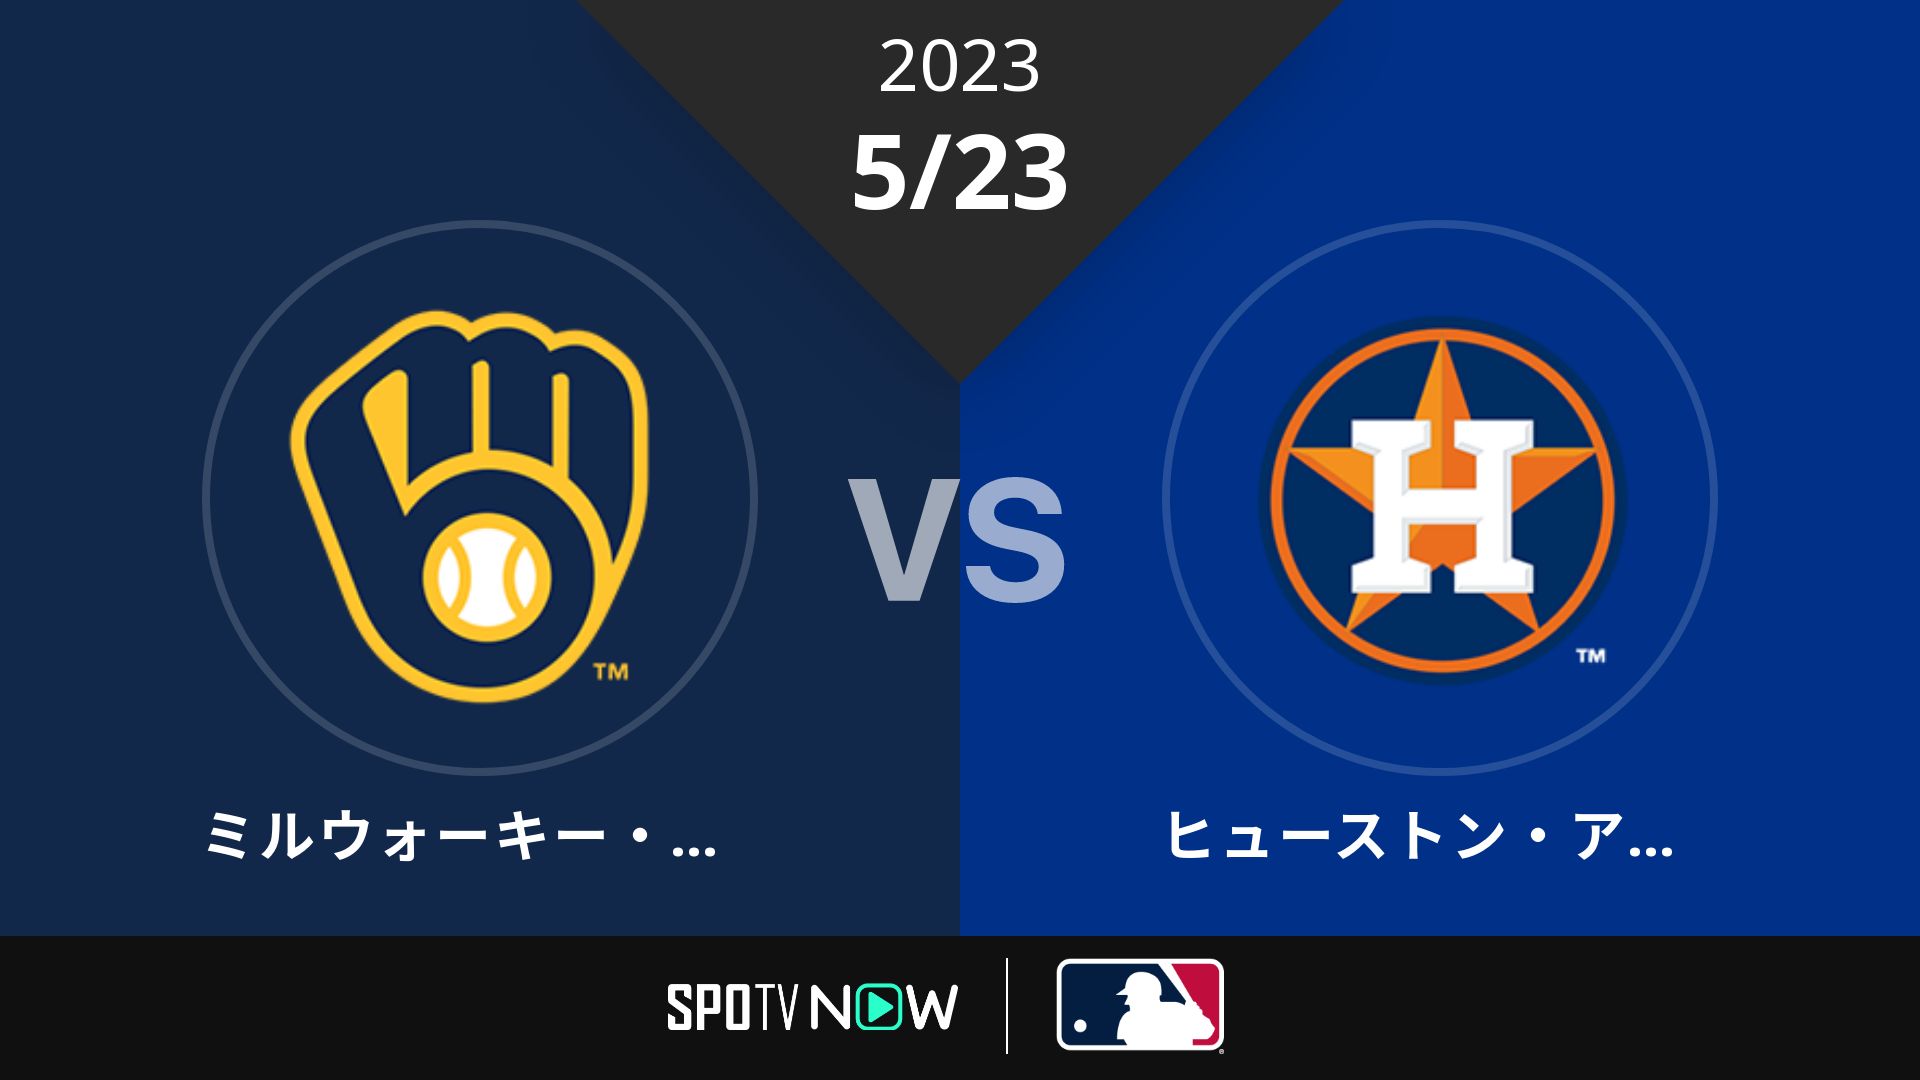 2023/5/23 ブリュワーズ vs アストロズ [MLB]